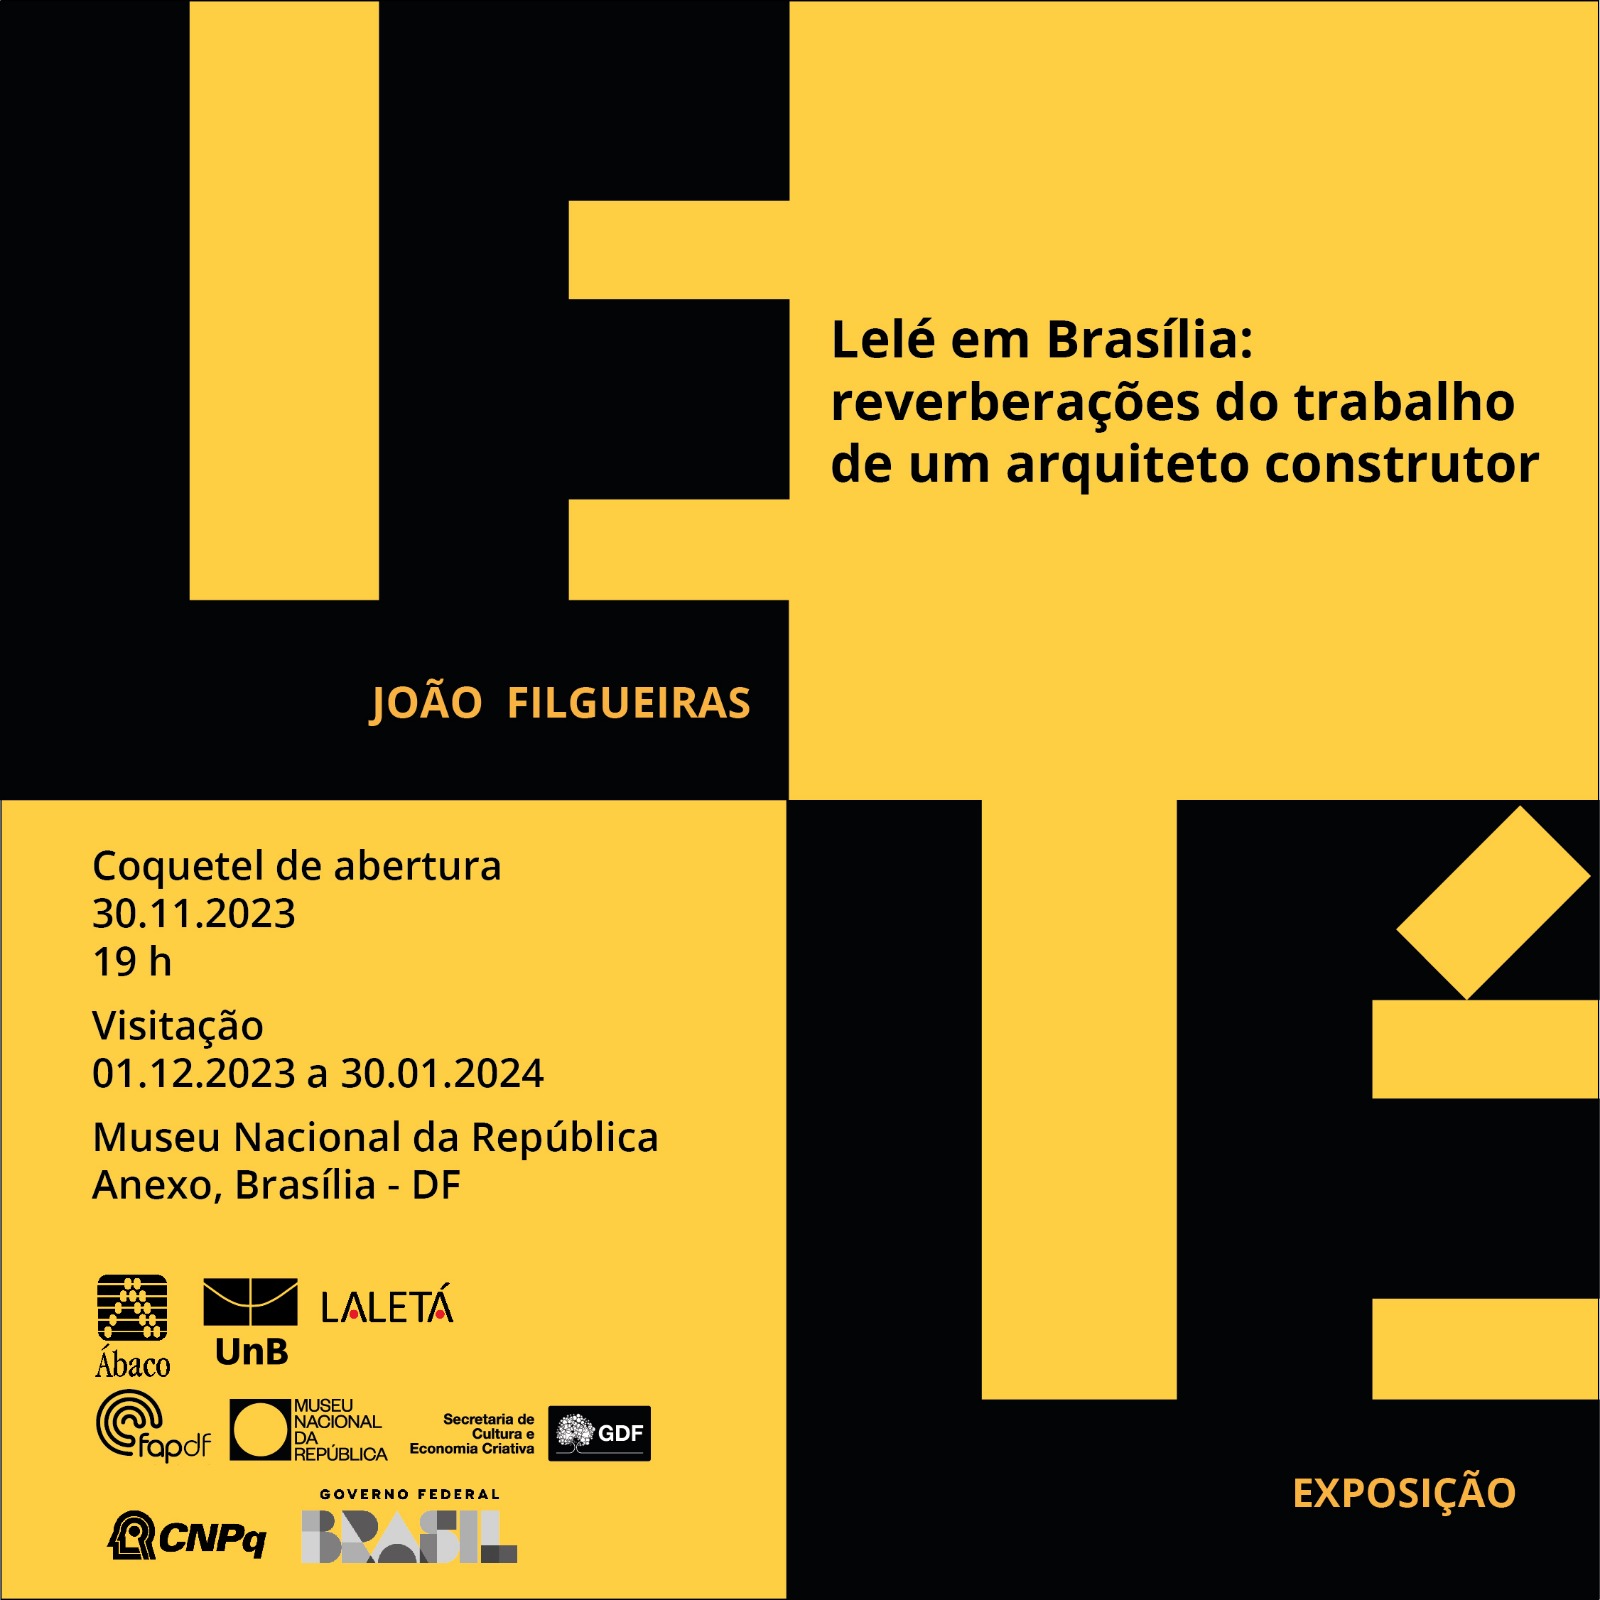 Lelé em Brasília: reverberações do trabalho de um arquiteto construtor